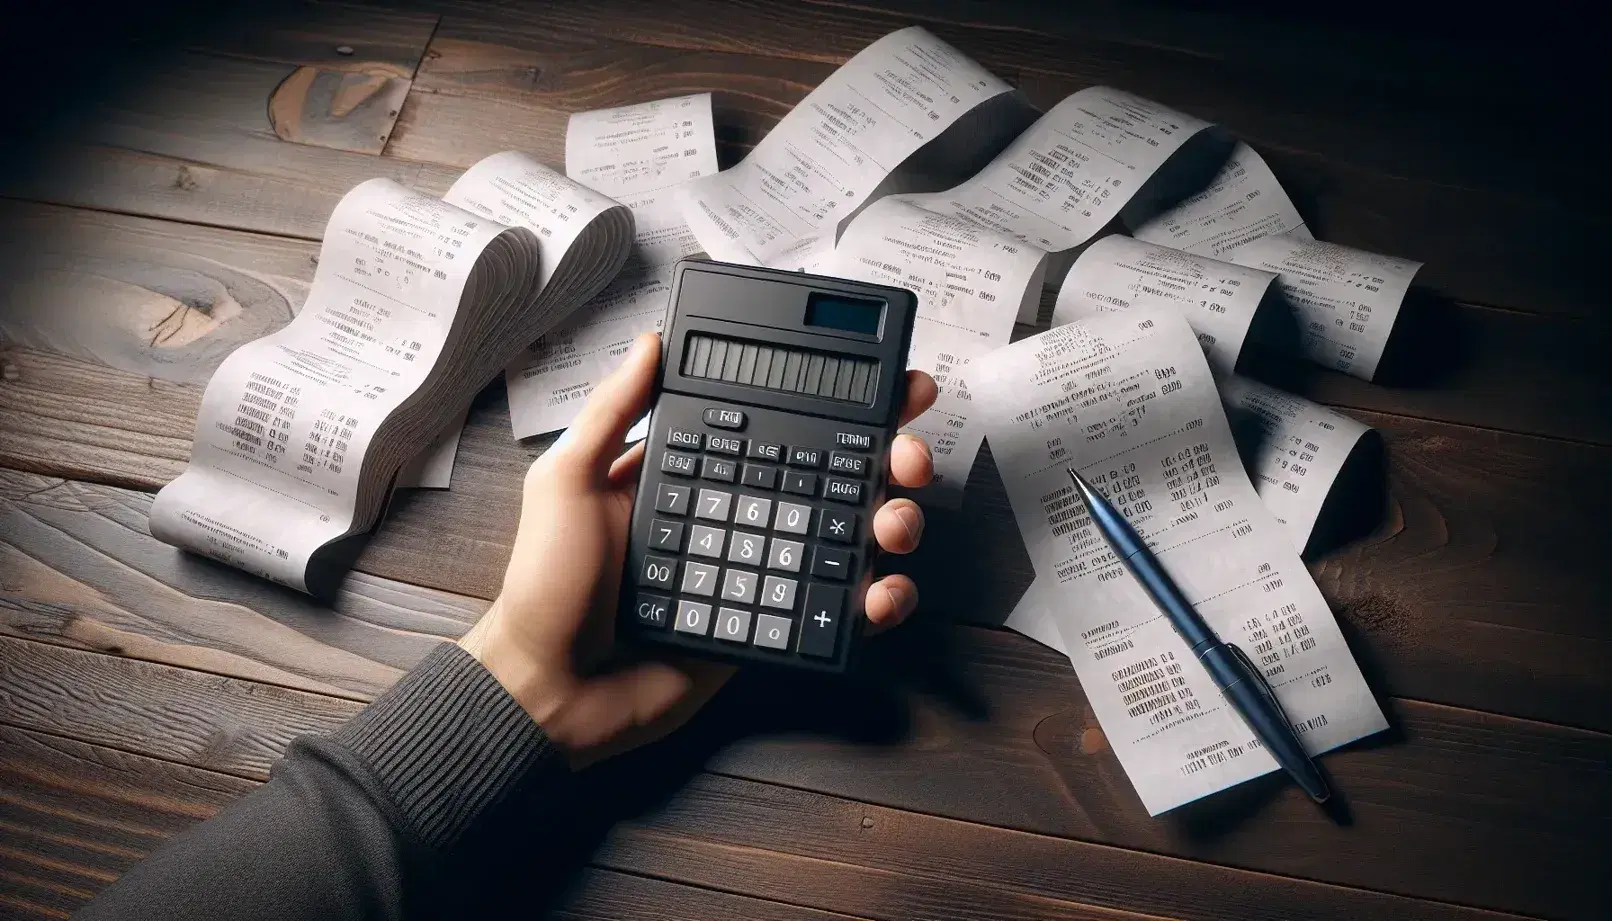 Mano sujetando calculadora apagada sobre escritorio de madera con recibos y bolígrafo azul al lado, reflejando gestión financiera o contabilidad.